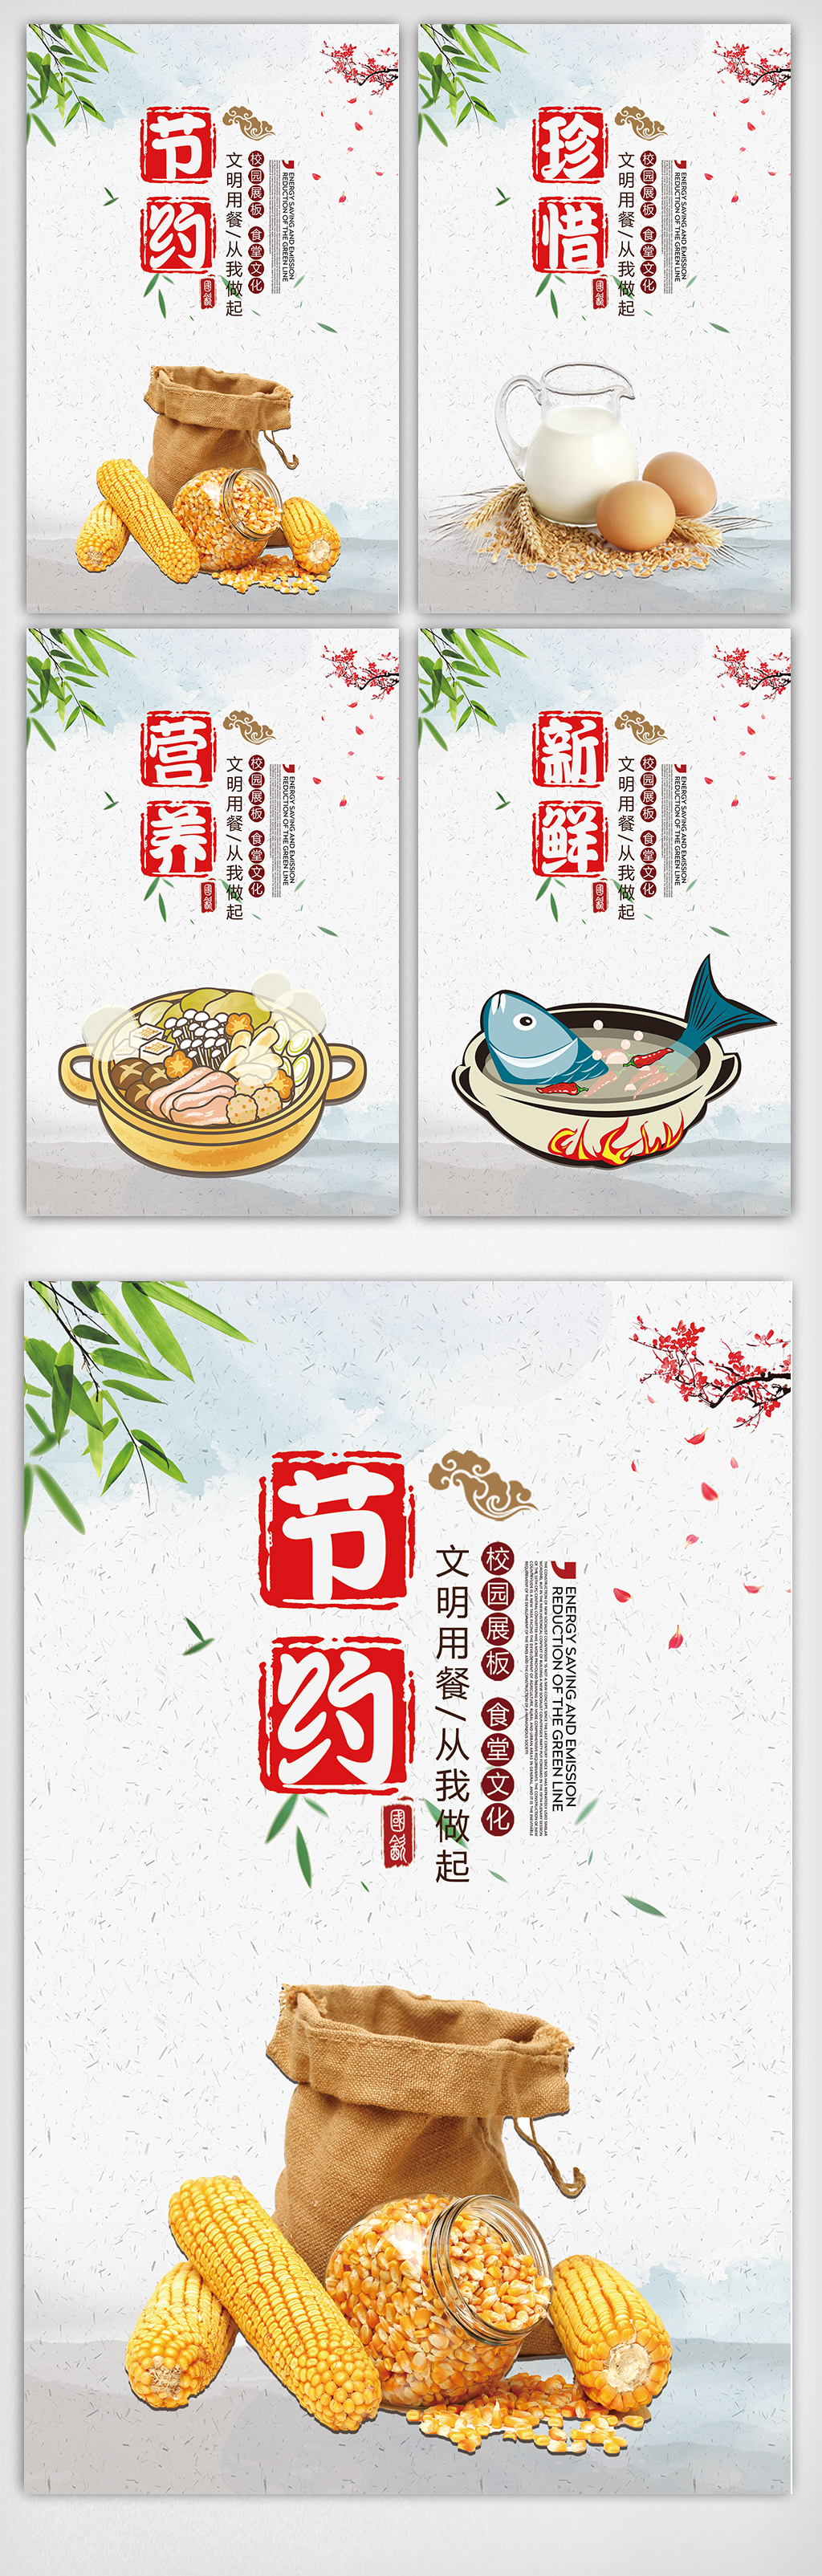 创意中国风学校食堂宣传挂画展板设计 珍惜粮食挂画 节约粮食海报